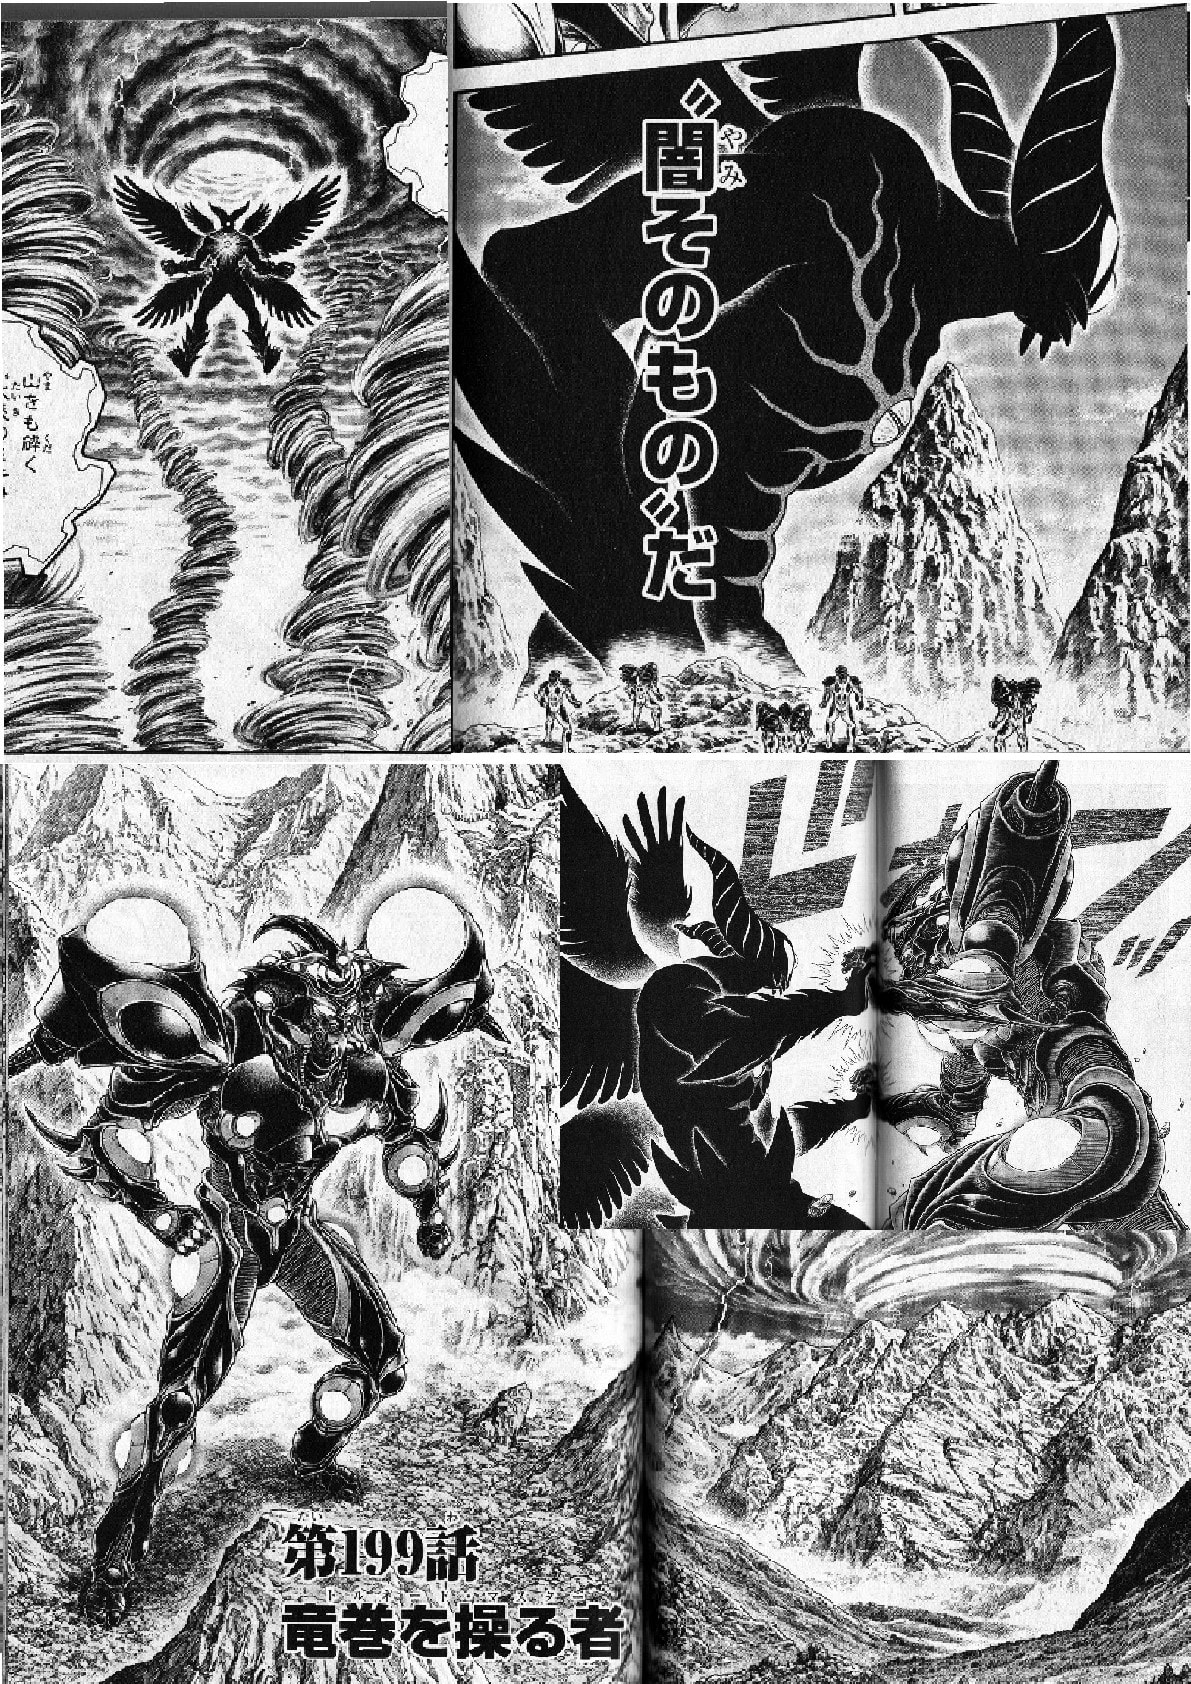 強殖装甲ガイバー３２巻 突如現れた まるで巨大なルシフェル 魔神ジャービル 恐るべき力巨神ｖｓ巨神 個人的に気に入った漫画だったり 書籍だったりを気まぐれで紹介するモトブログおじさん